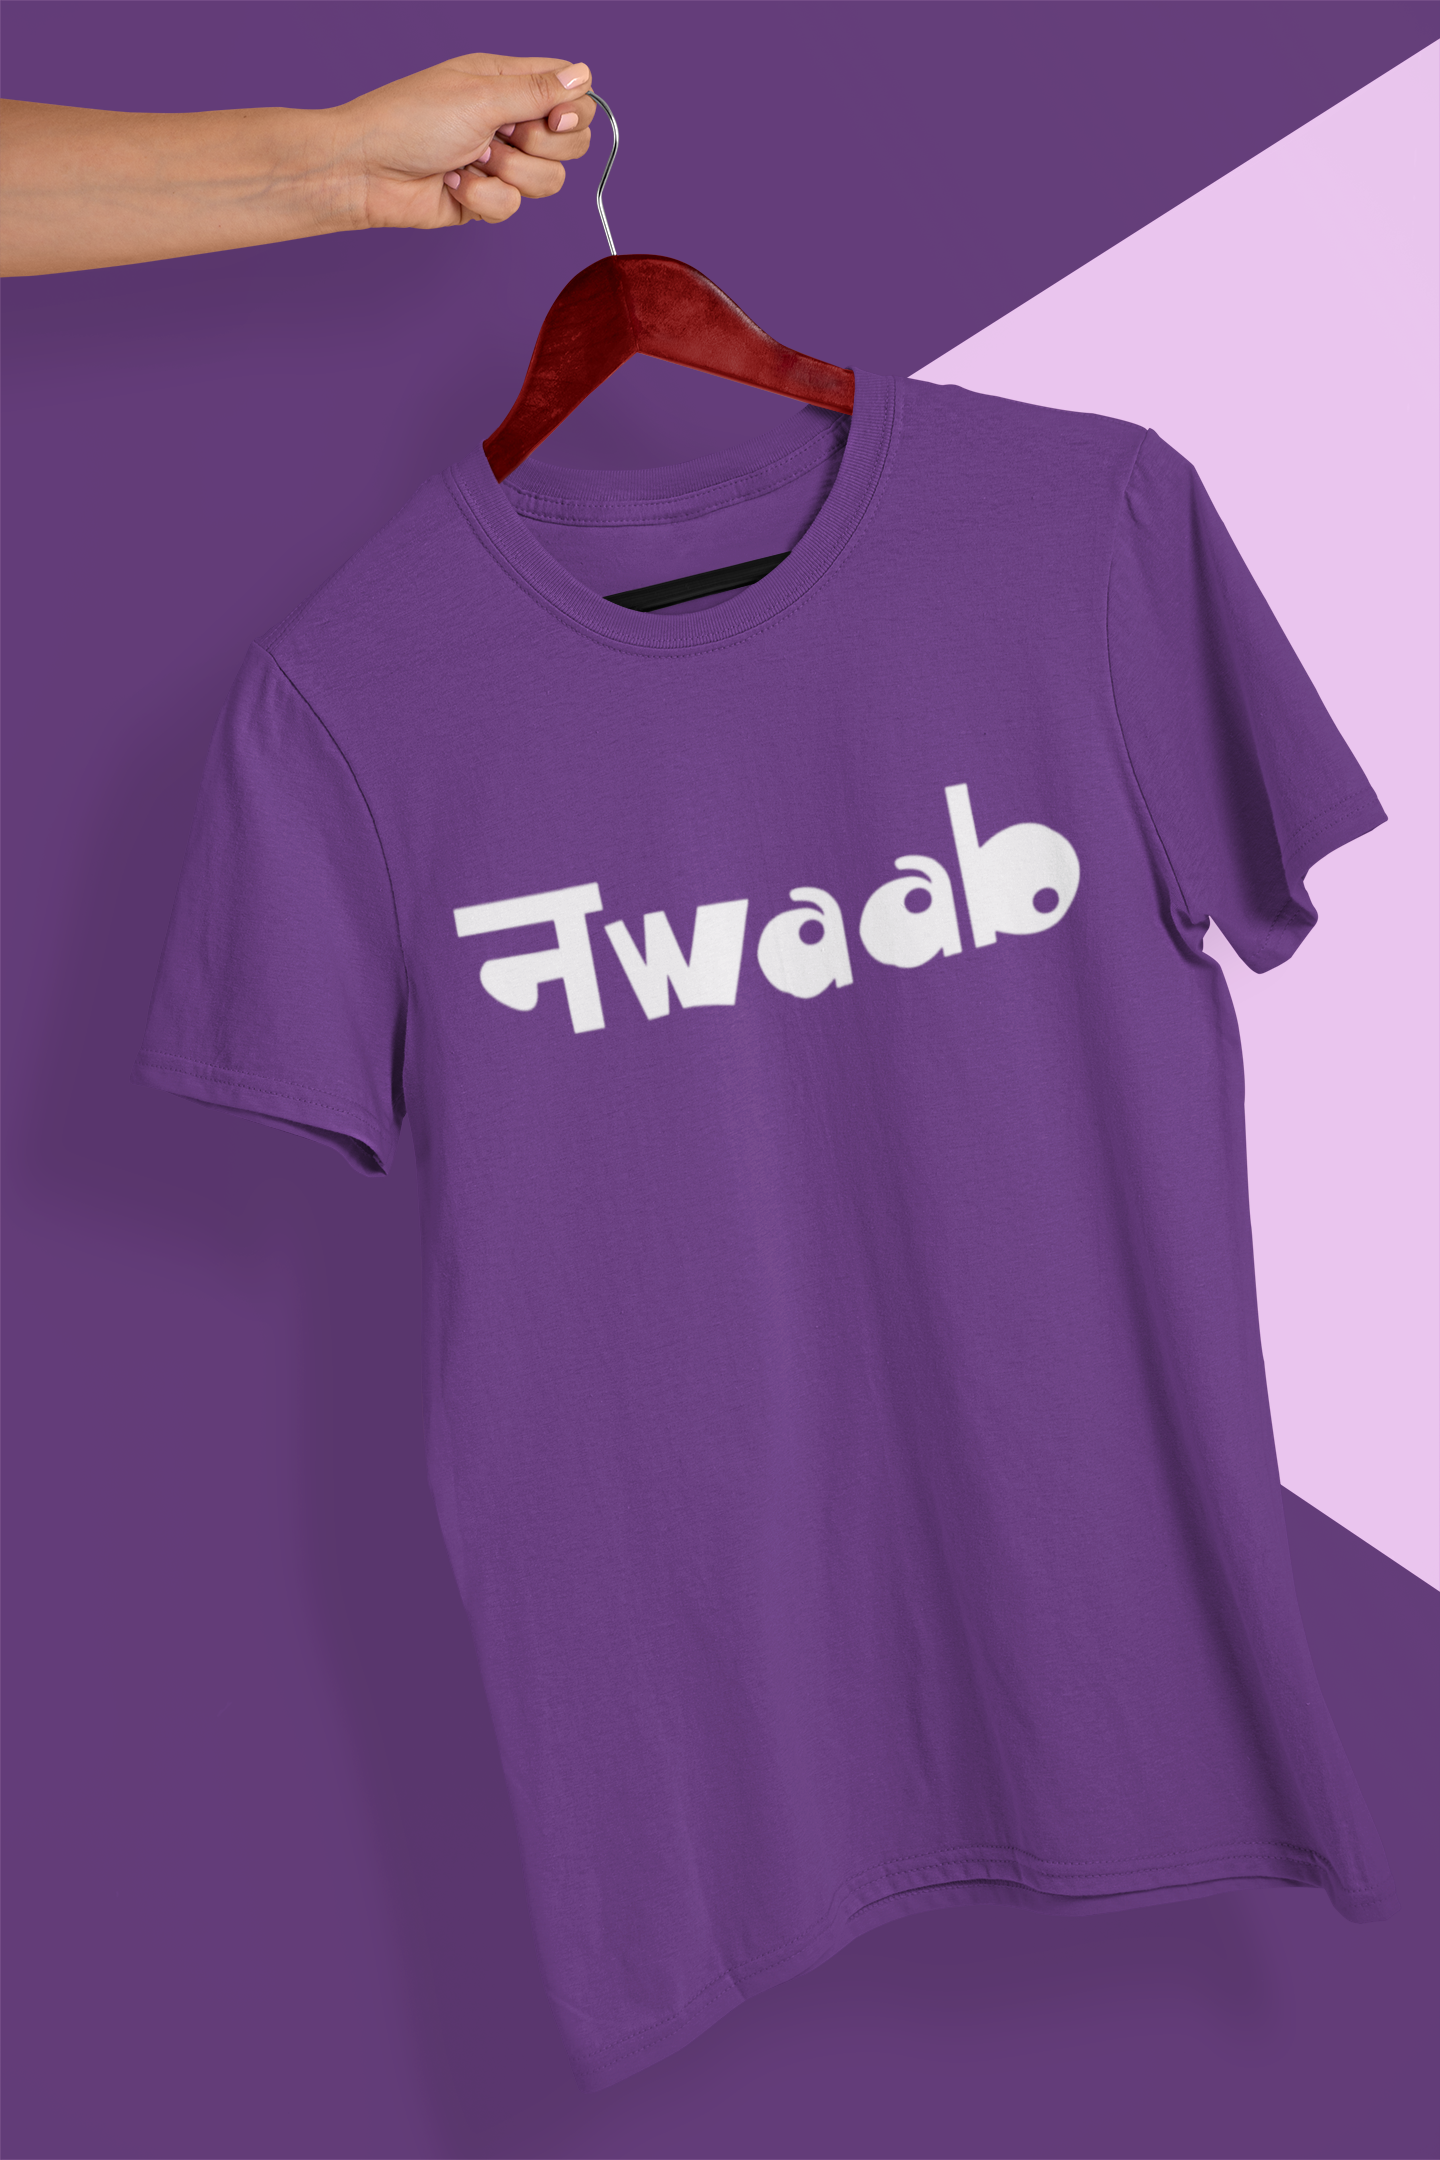 Nwaab Mens Half Sleeves T-shirt- FunkyTeesClub